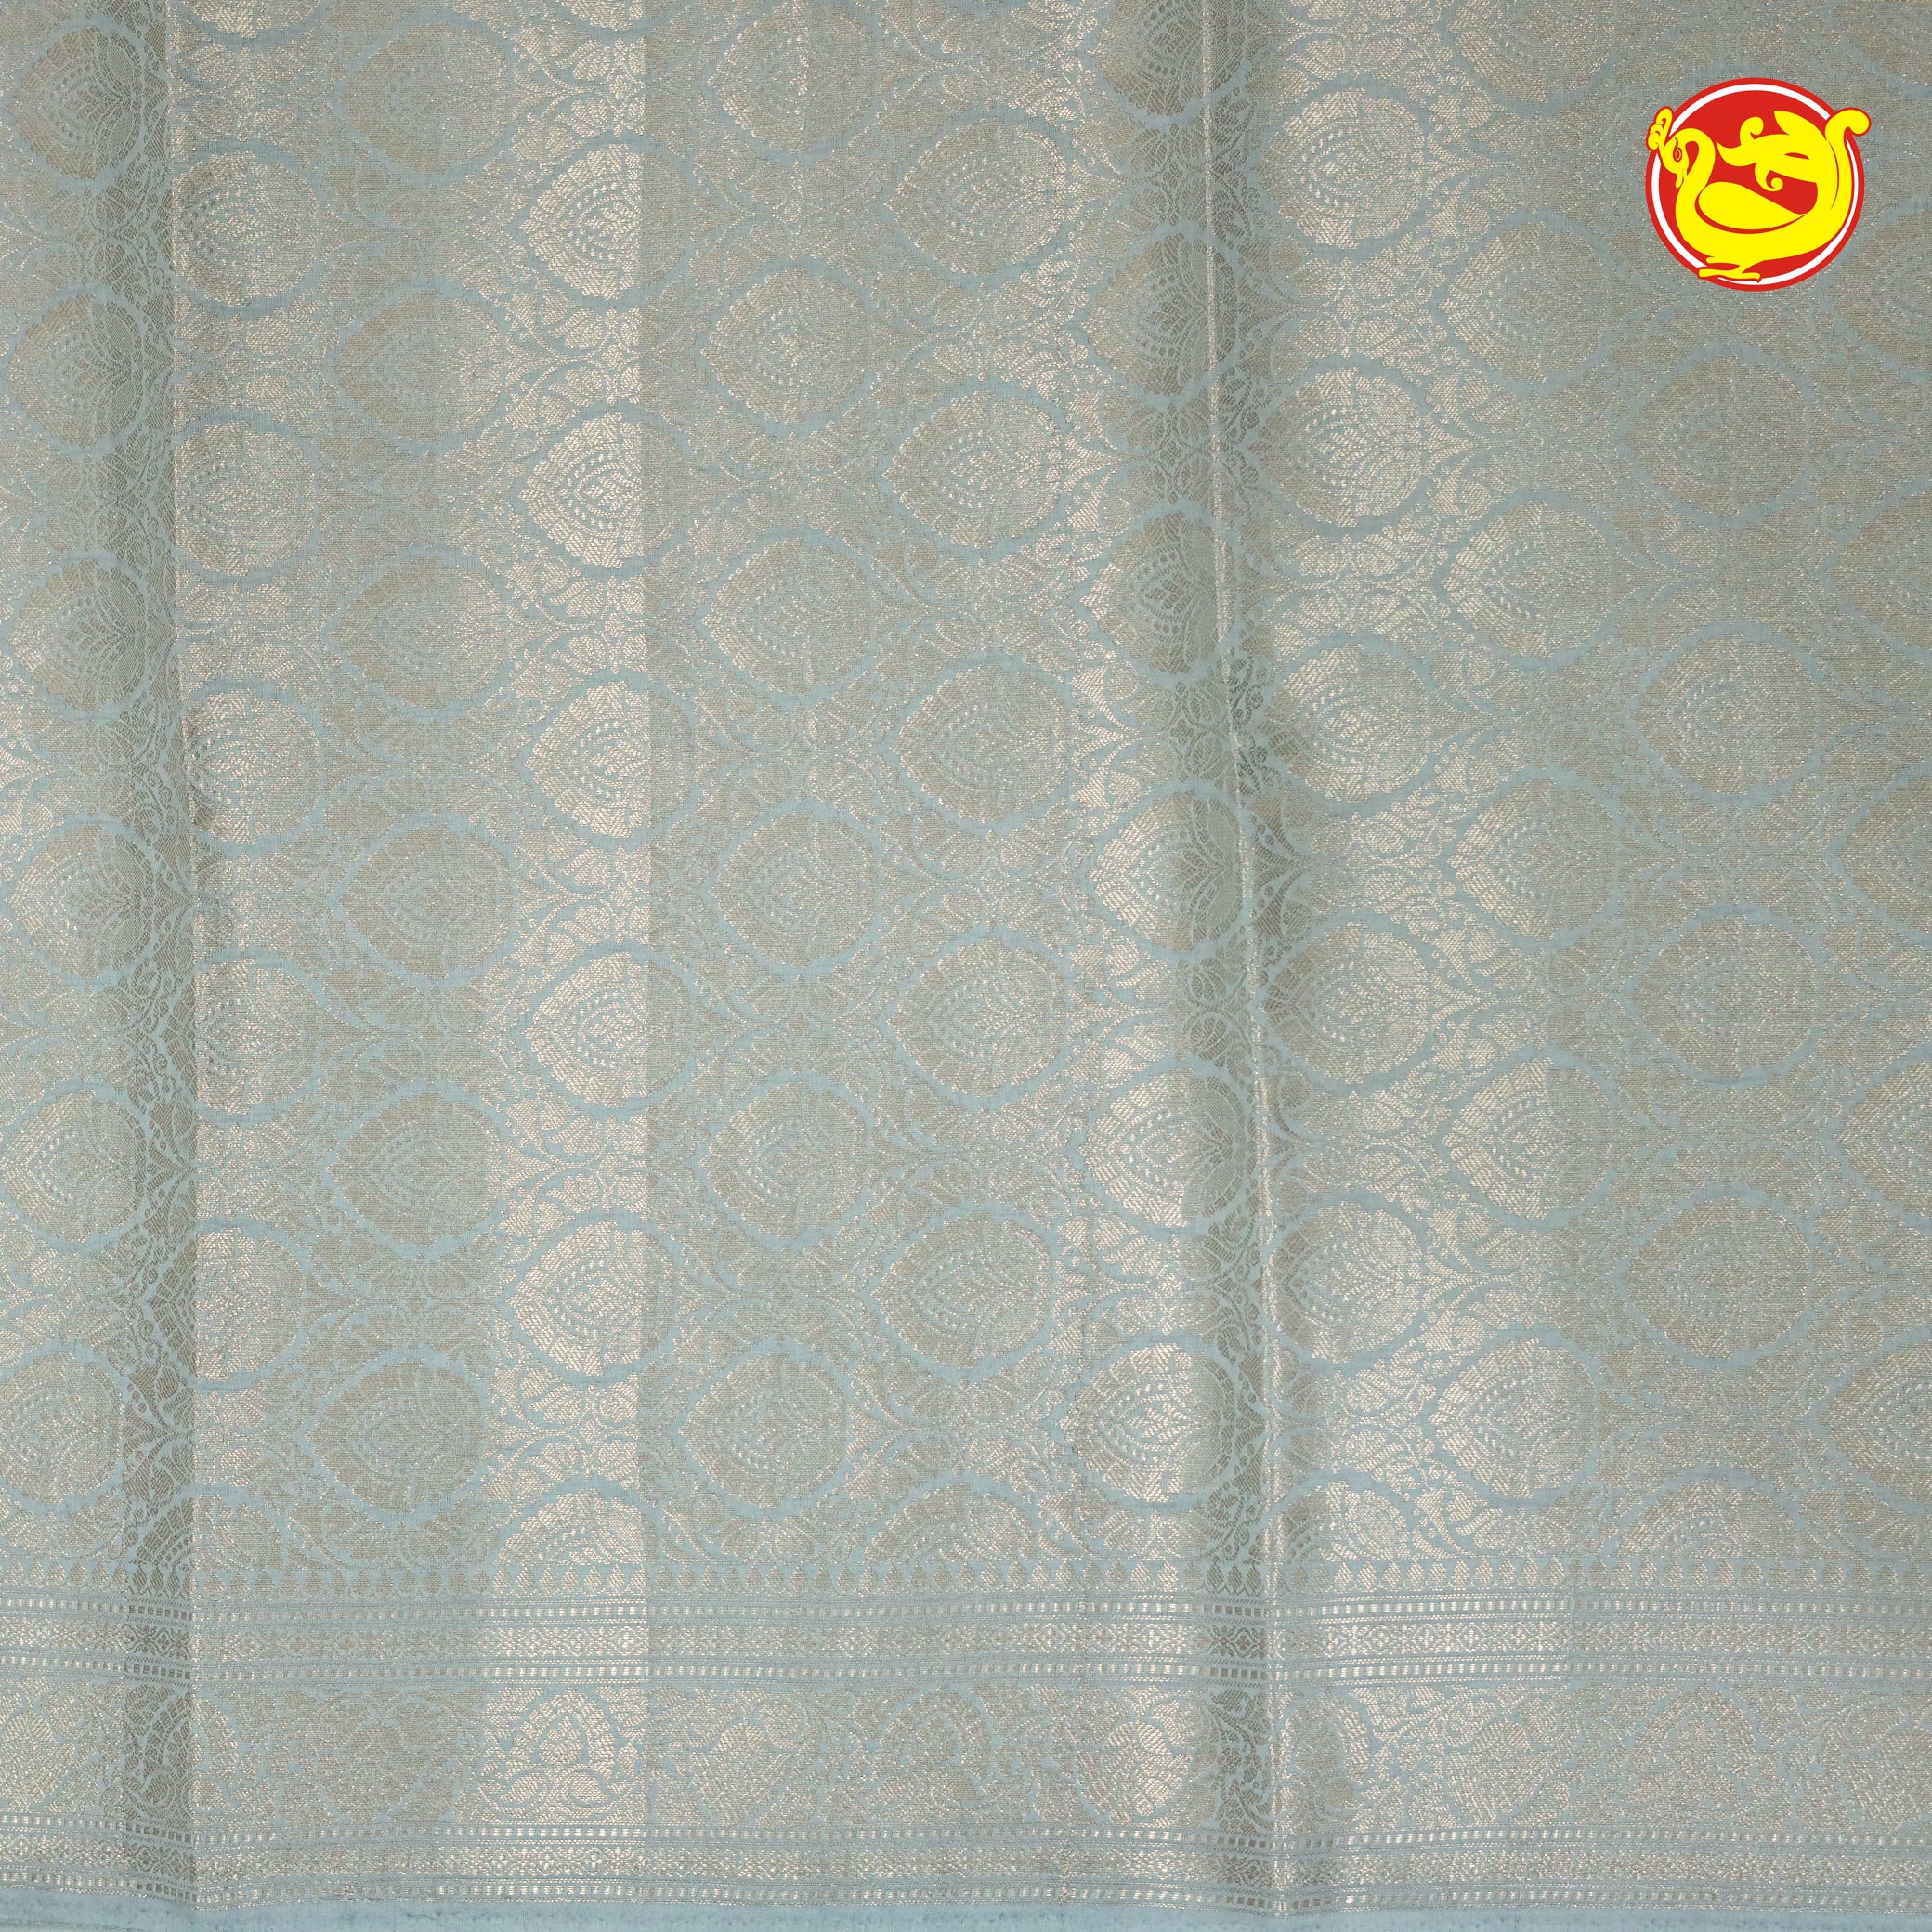 White Semi-Tissue Saree With Unique Buttas, Traditional Zari Border & Pallu Of Intricate Designs